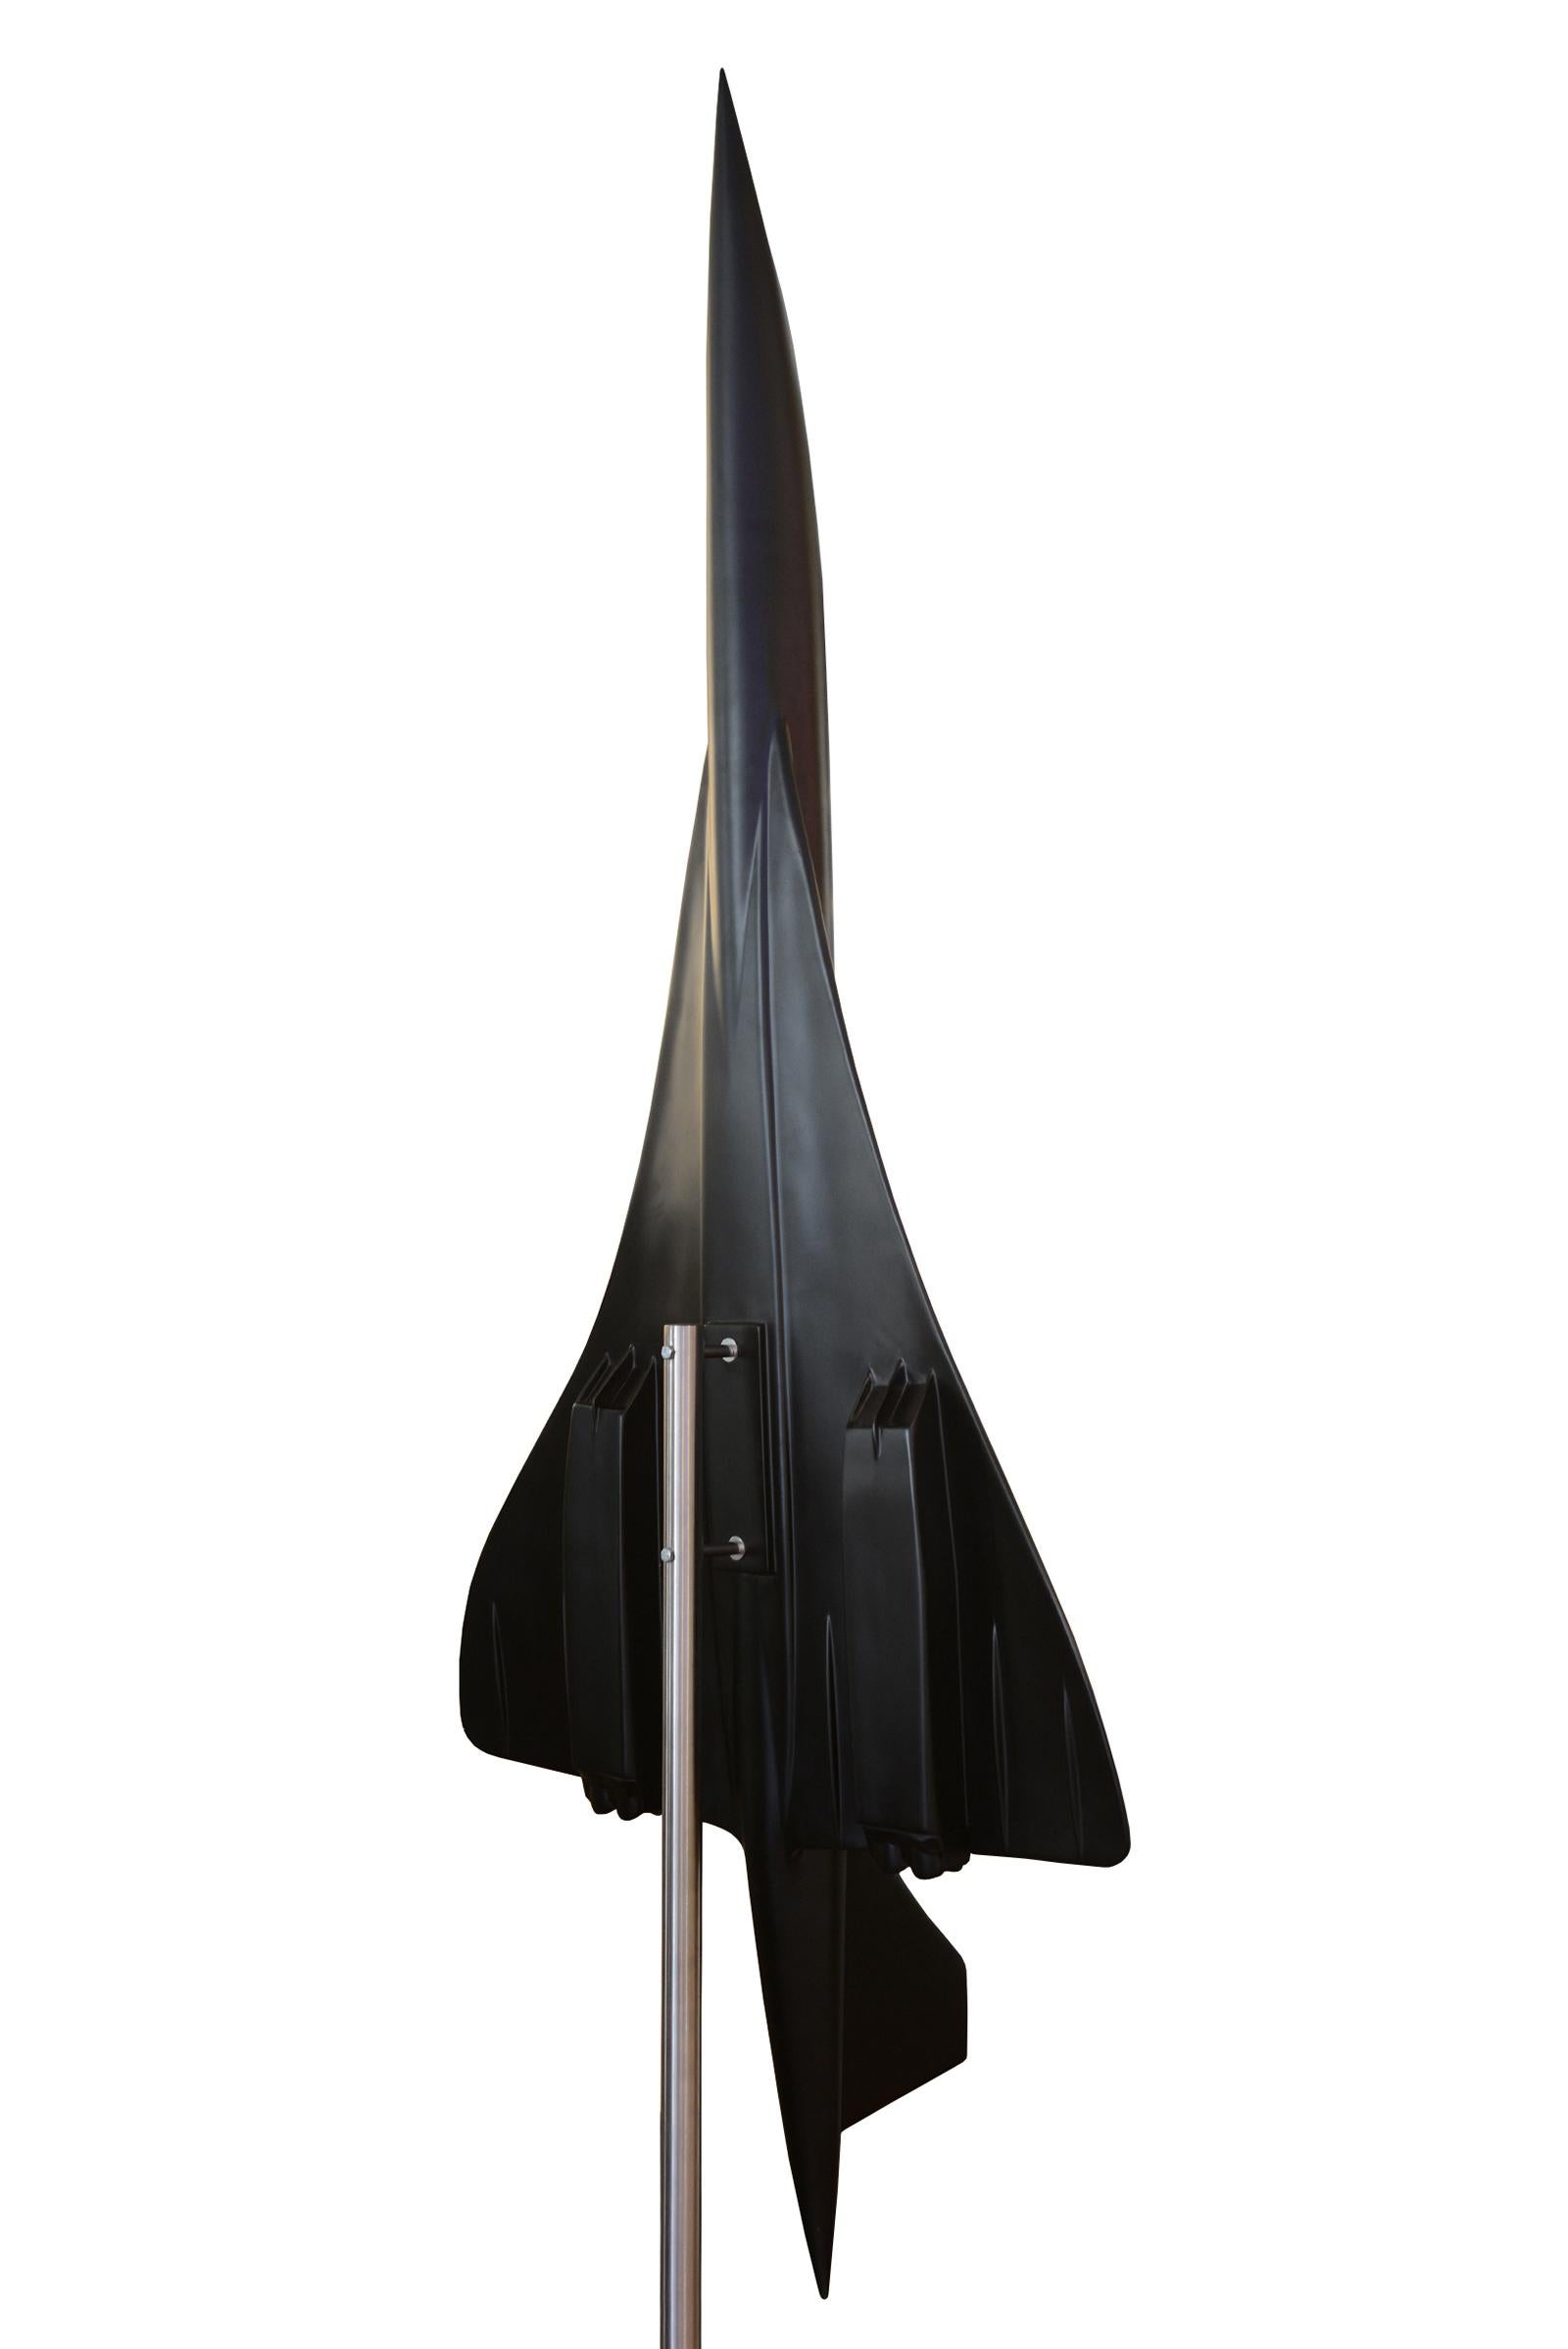 Cast Concorde Model Black Sculpture For Sale